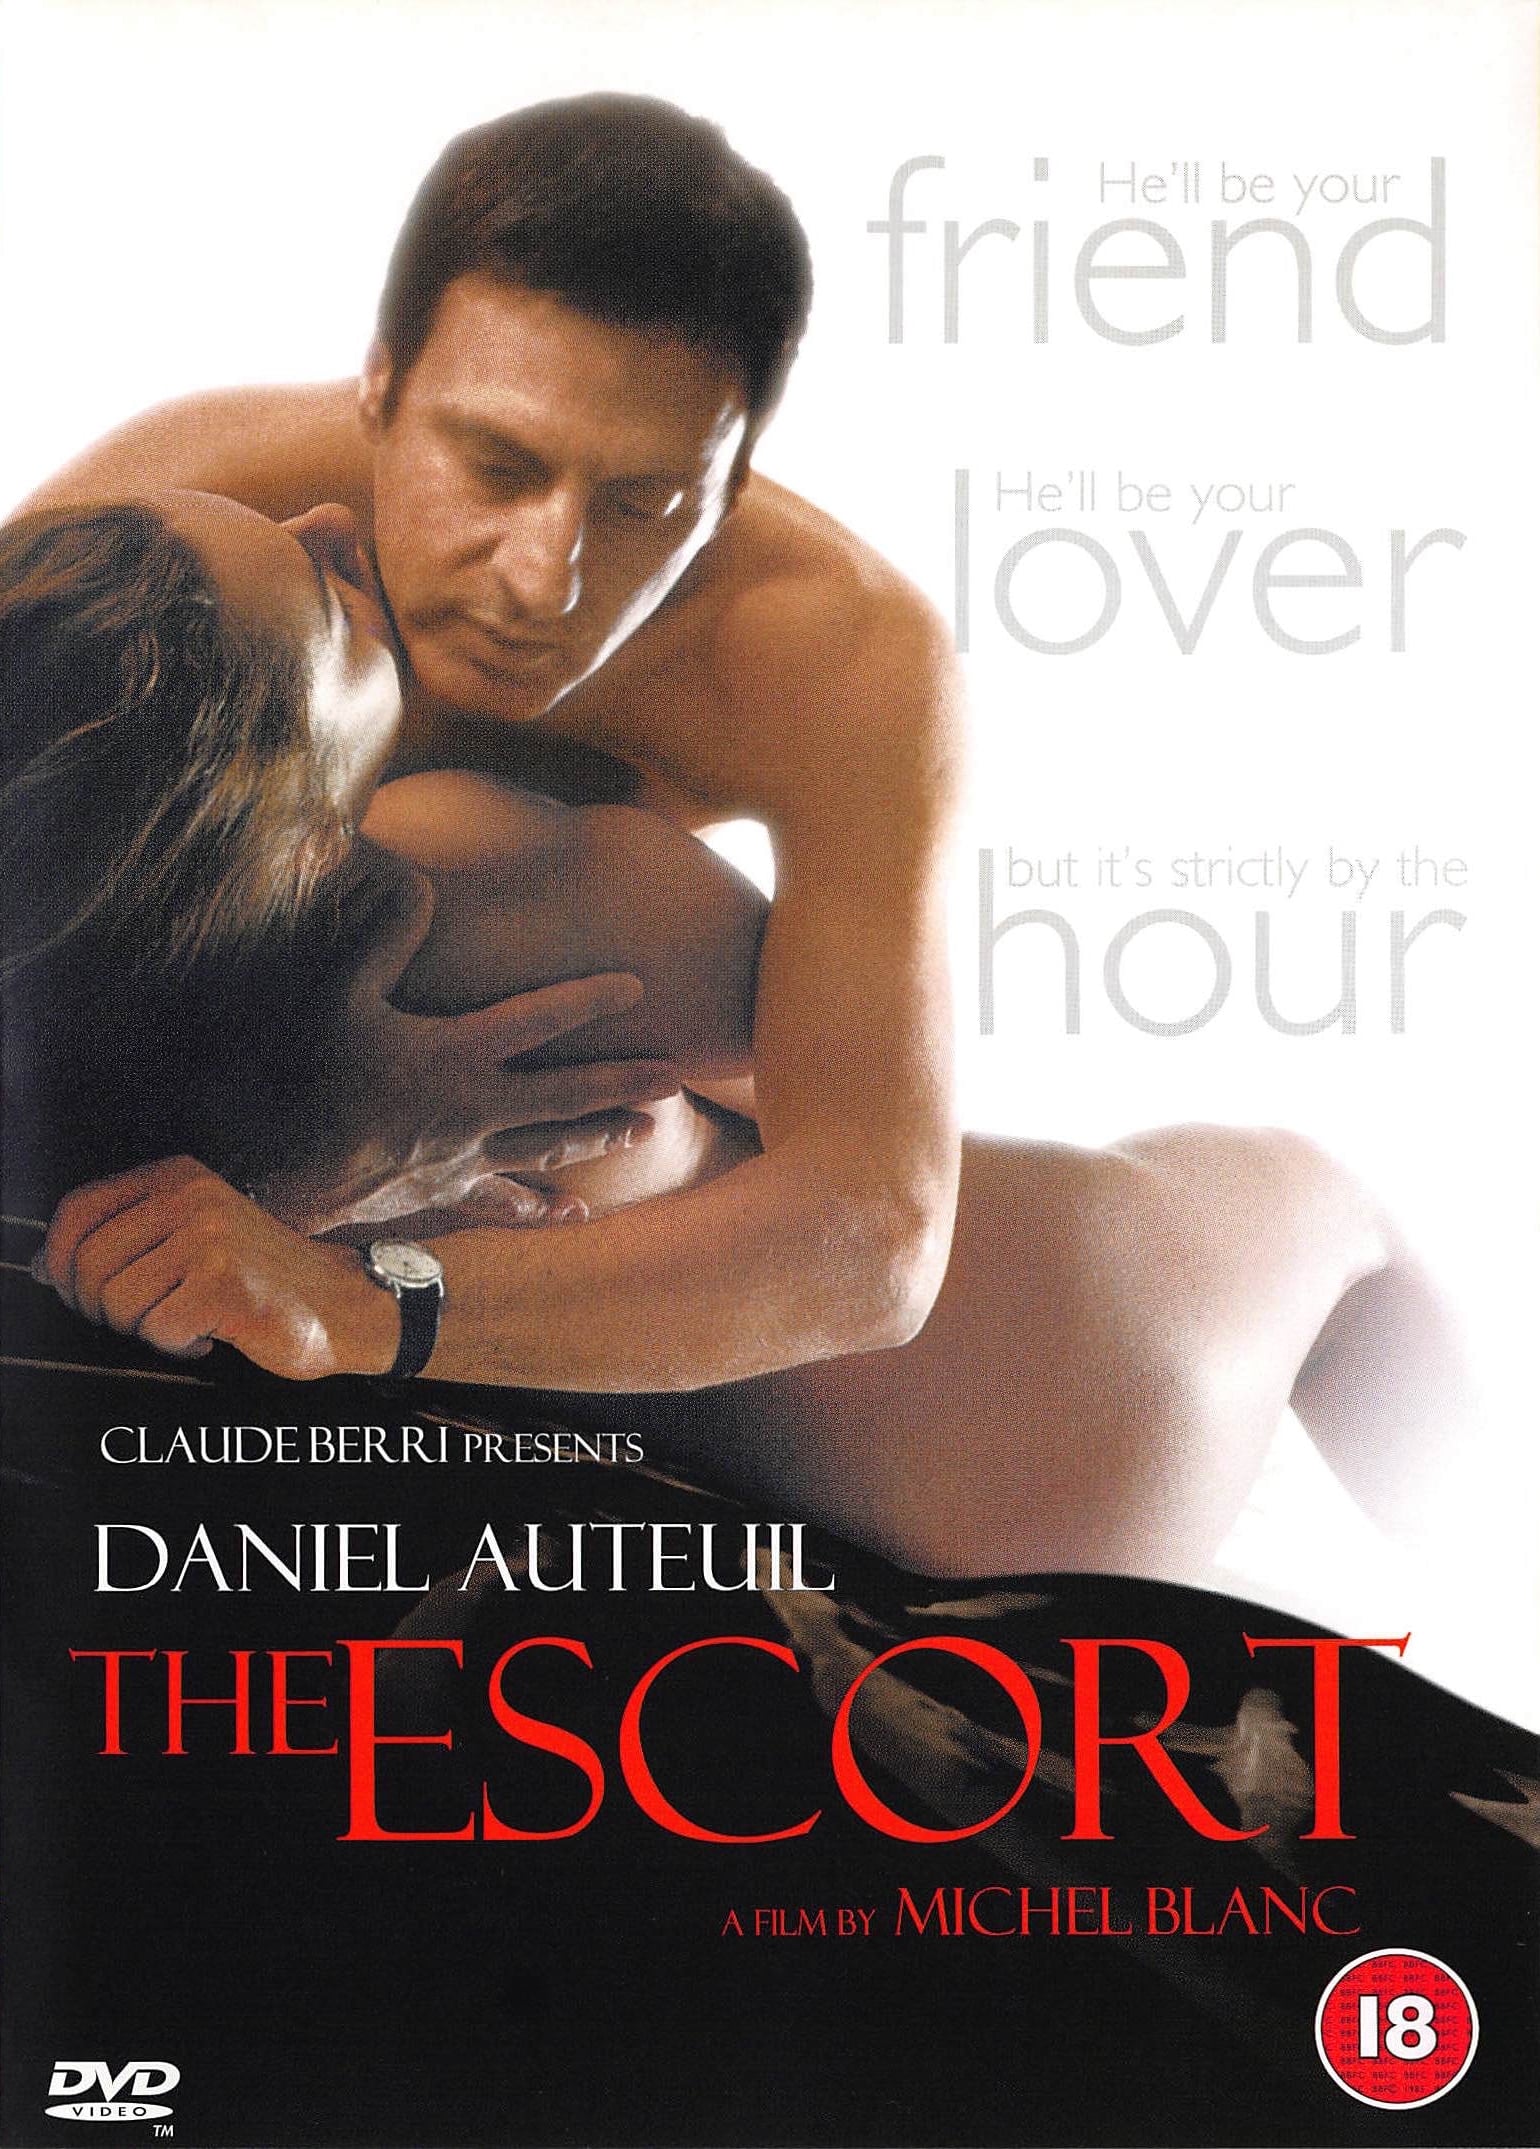 The Escort (1999)